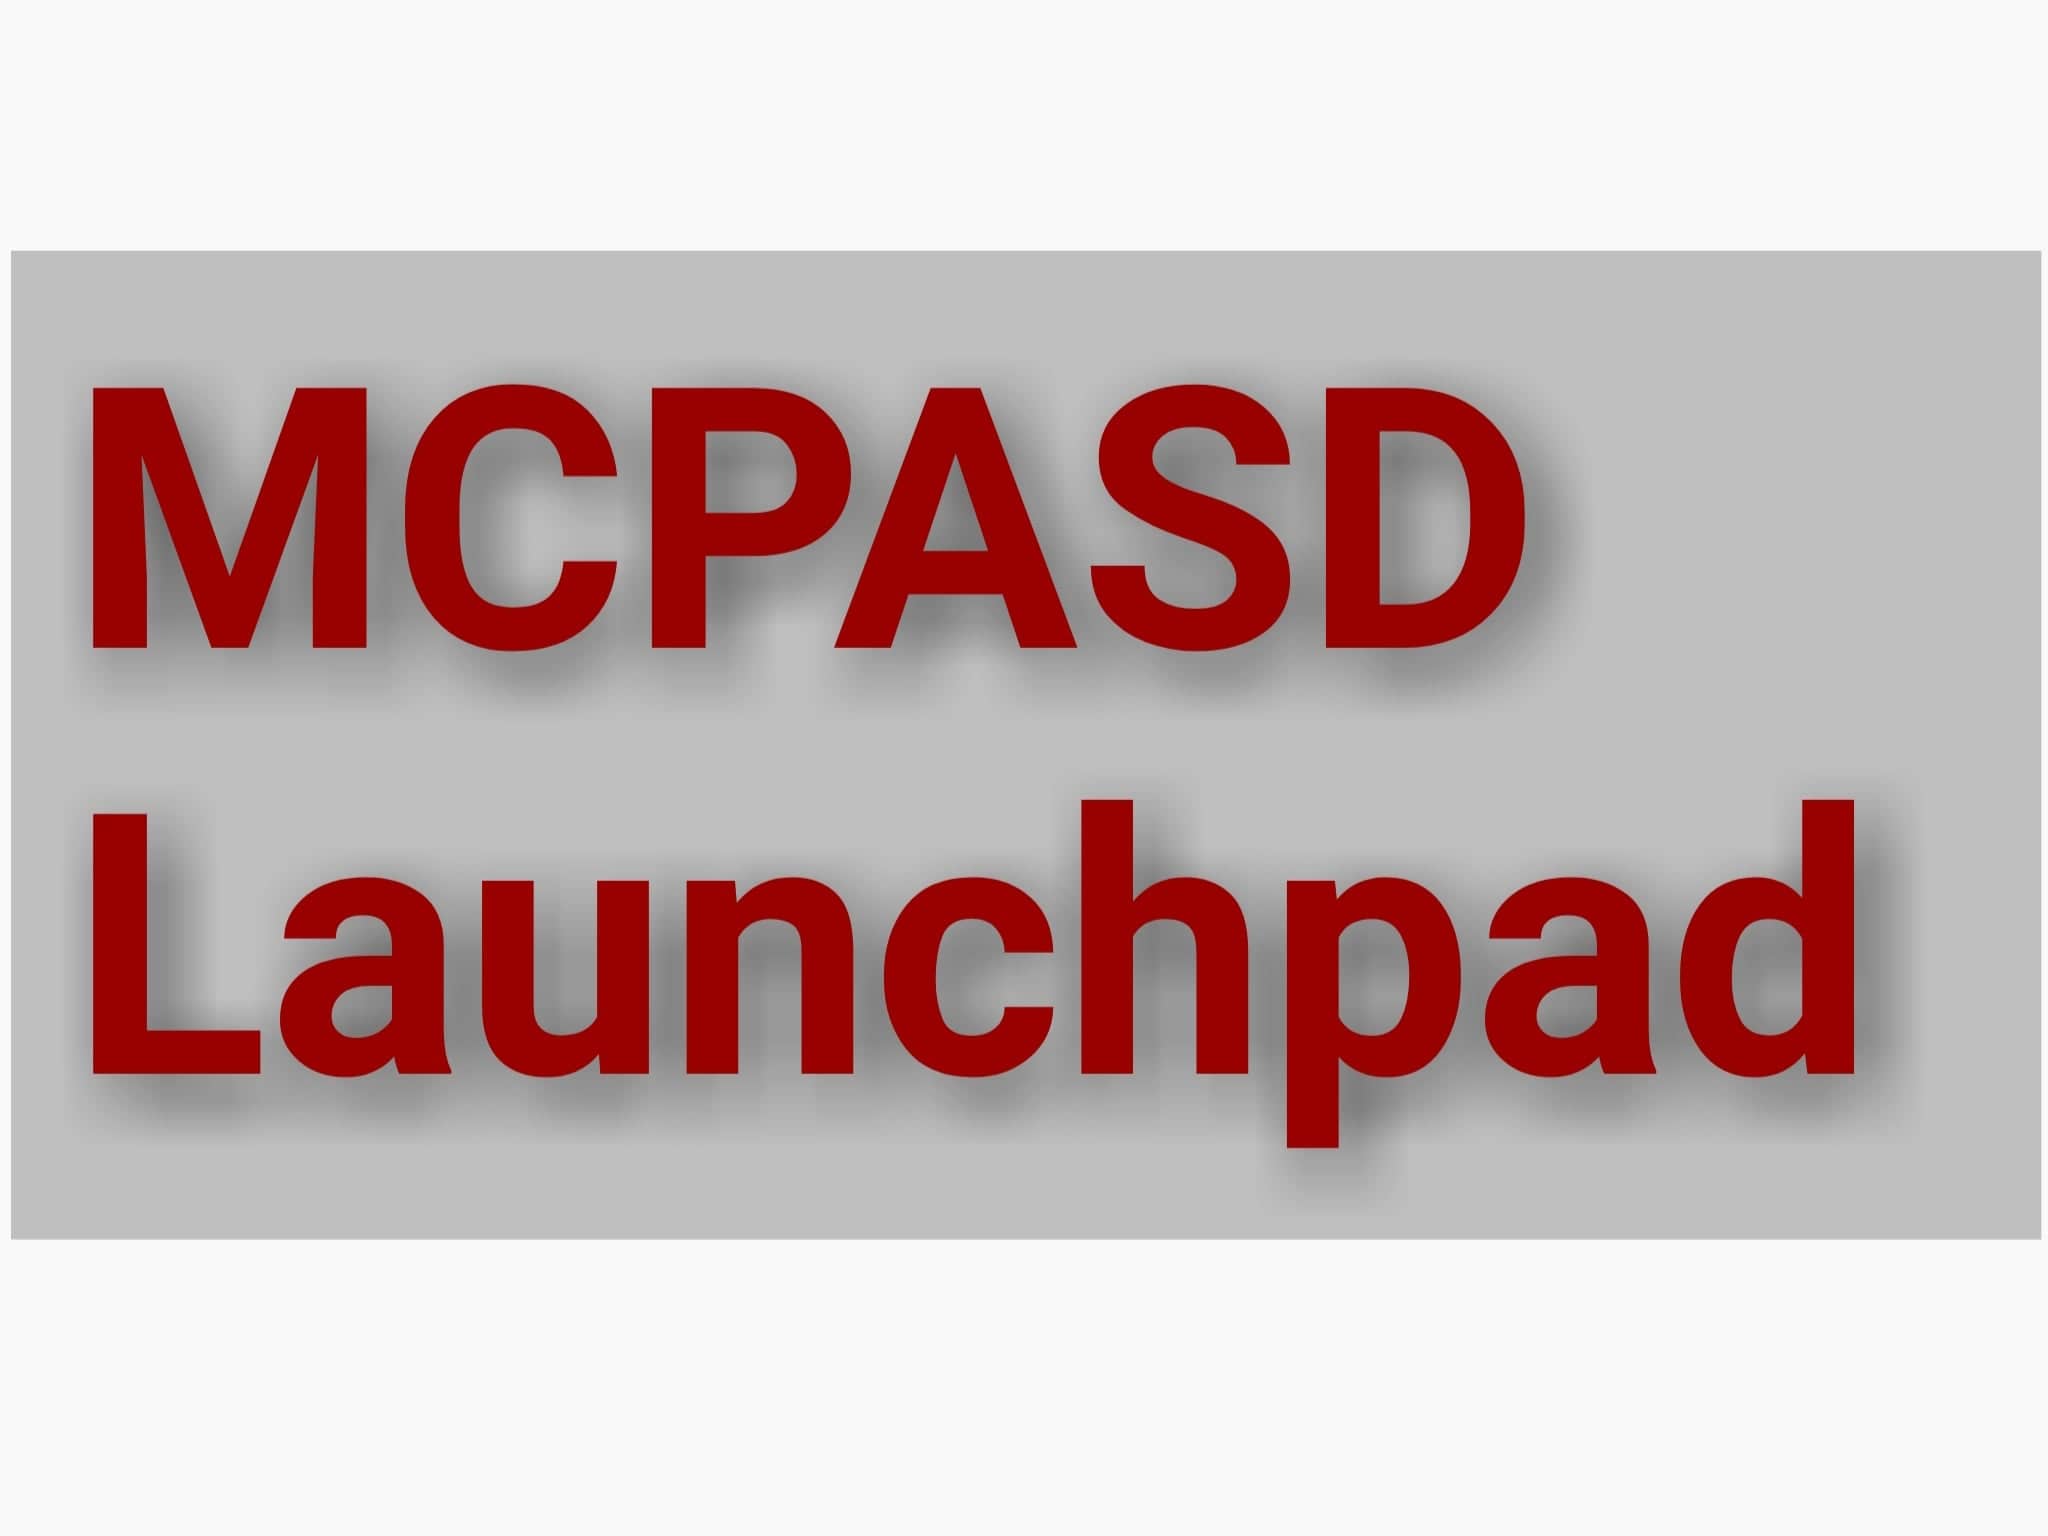 MCPASD Launchpad Alternatives